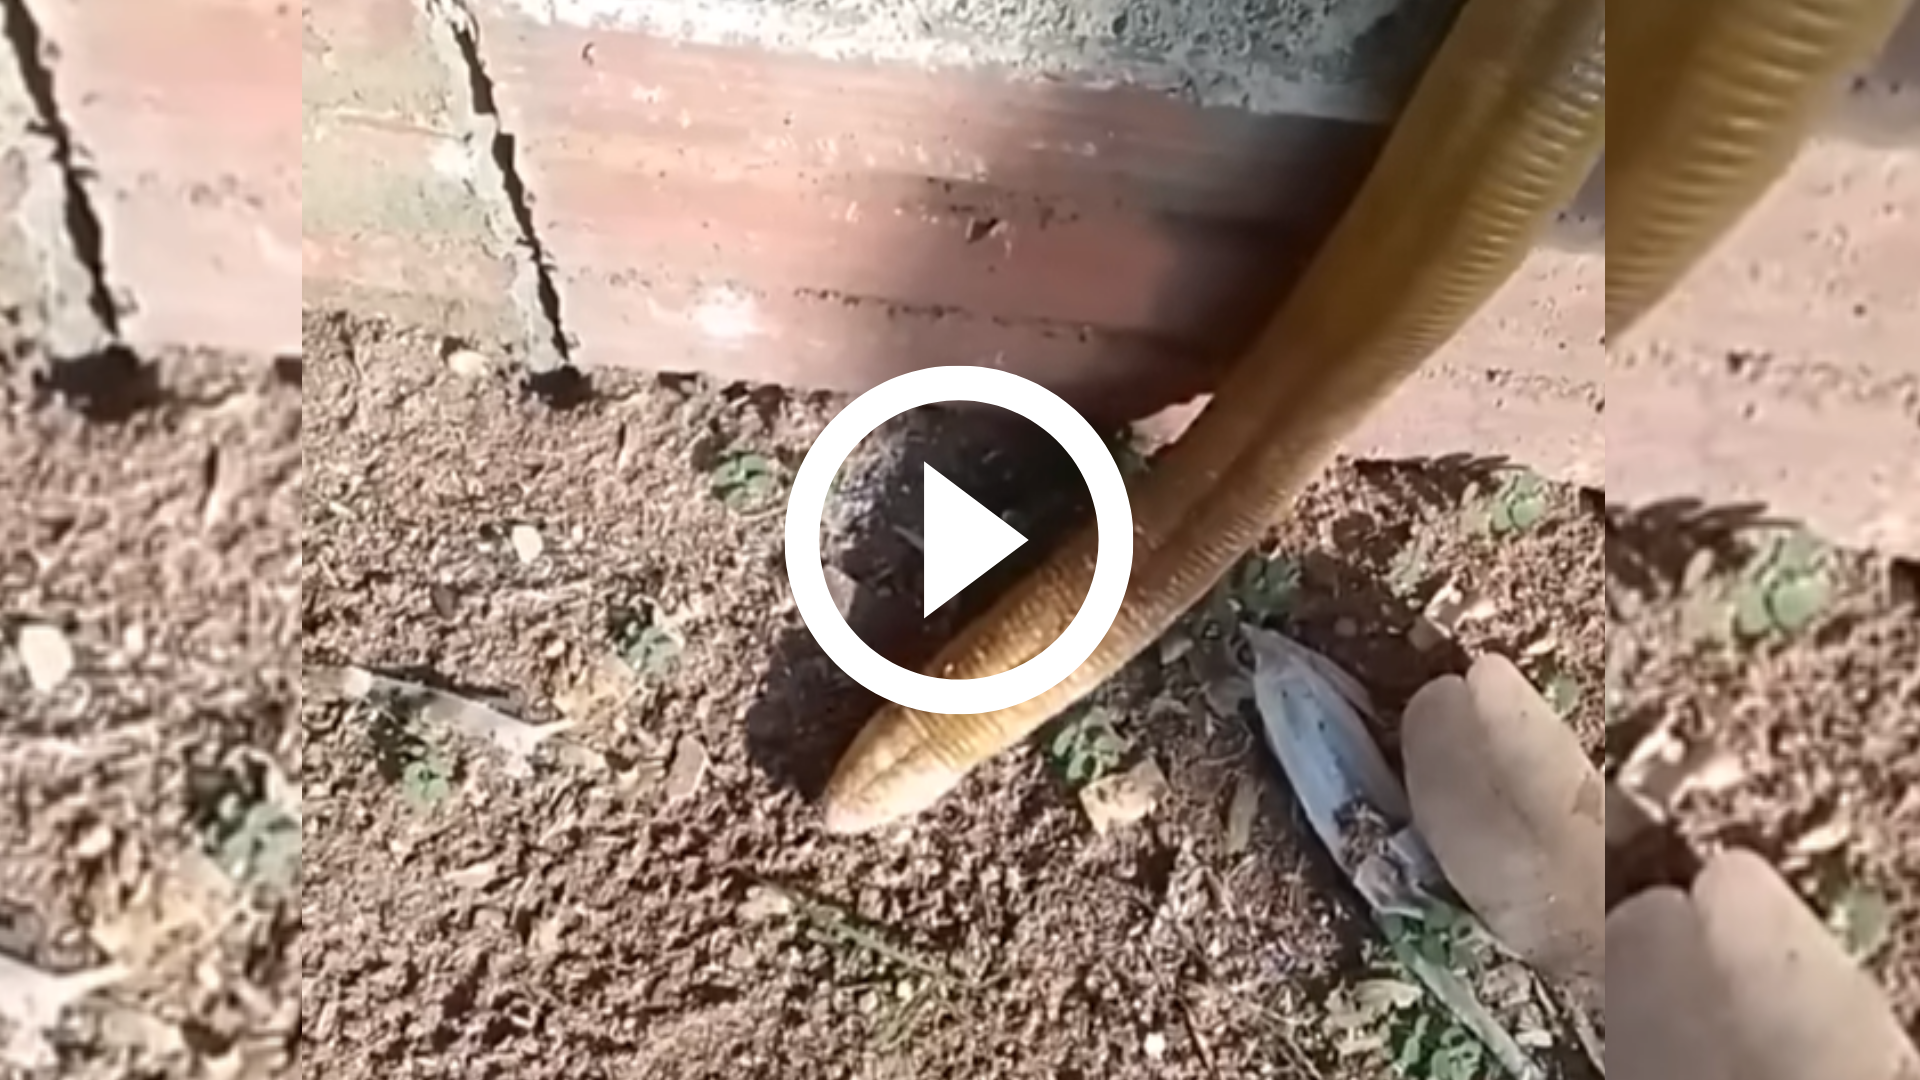 Biólogo encontra cobra-de-duas-cabeças no quintal de casa em SC